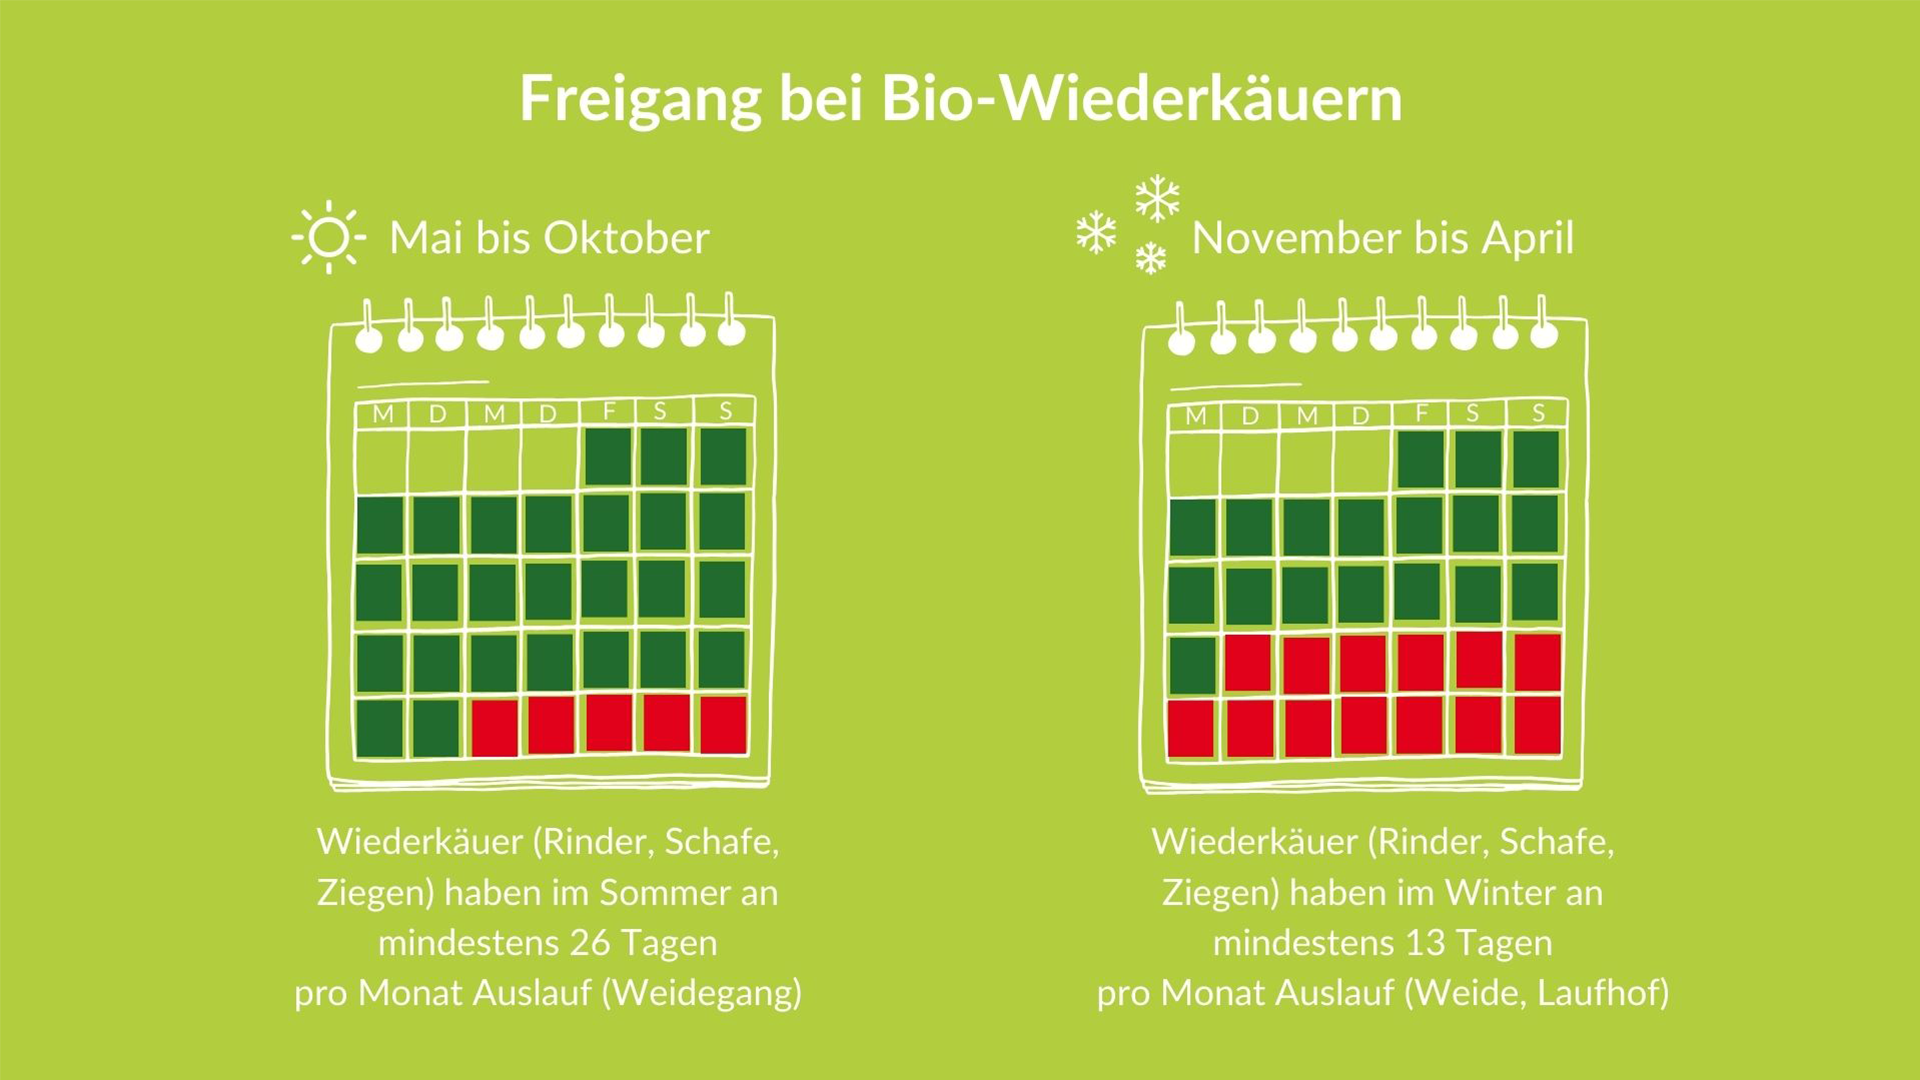 Bio-Wiederkäuer haben im Sommer mindestens 26 Tage Auslauf und im Winter mindestens 13 Tage (Bild: «Bern ist Bio»).